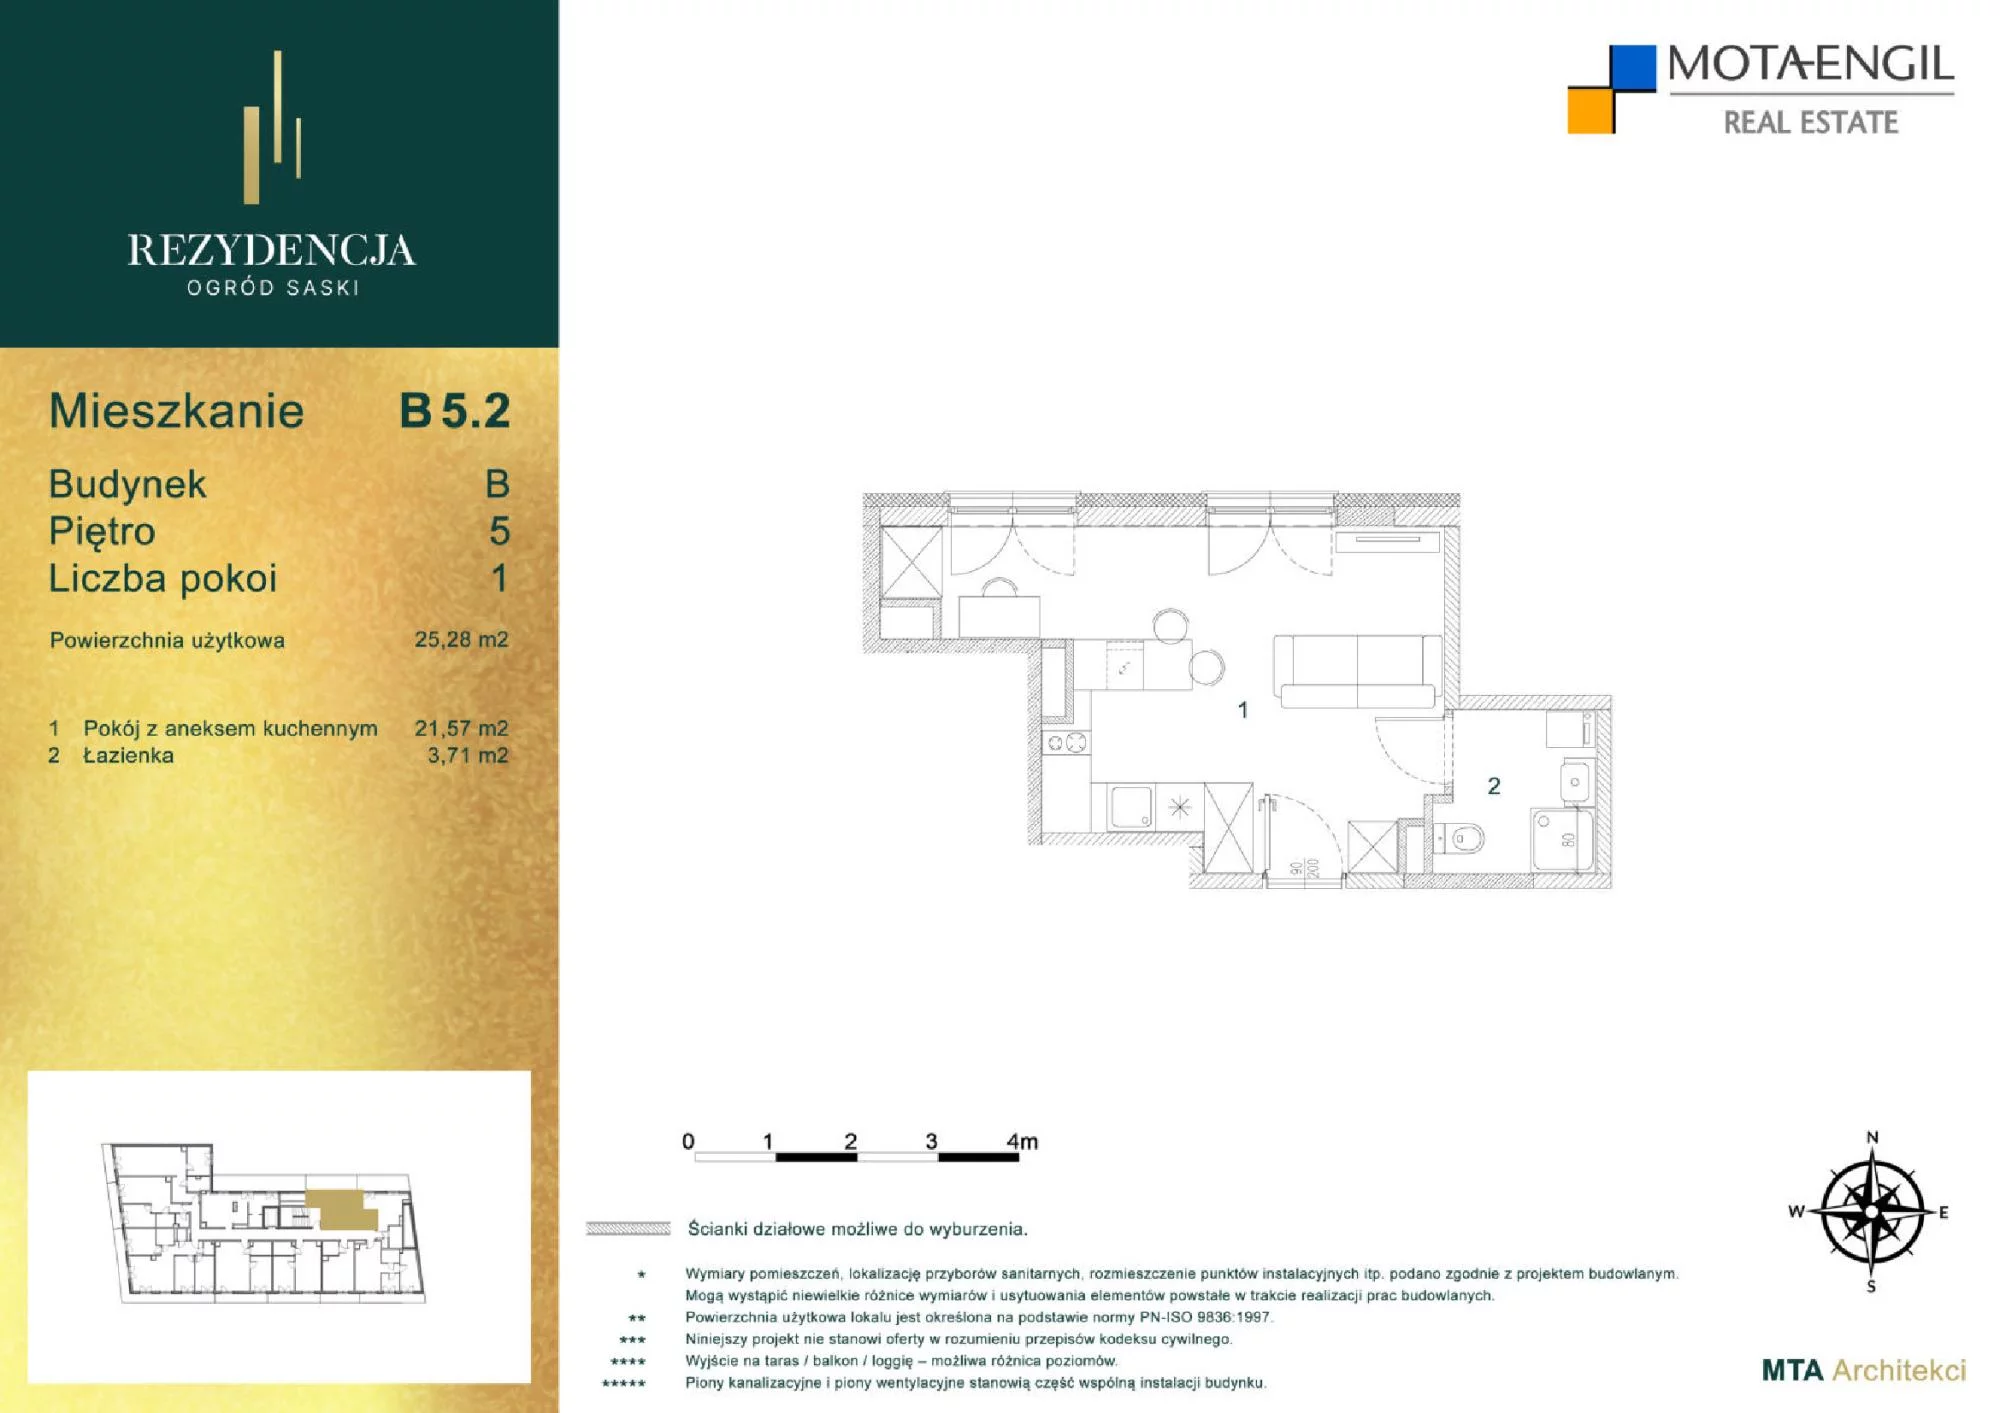 Mieszkanie 25,28 m², piętro 5, oferta nr B5.2, Rezydencja Ogród Saski, Lublin, Wieniawa, ul. Jasna 7, 7A